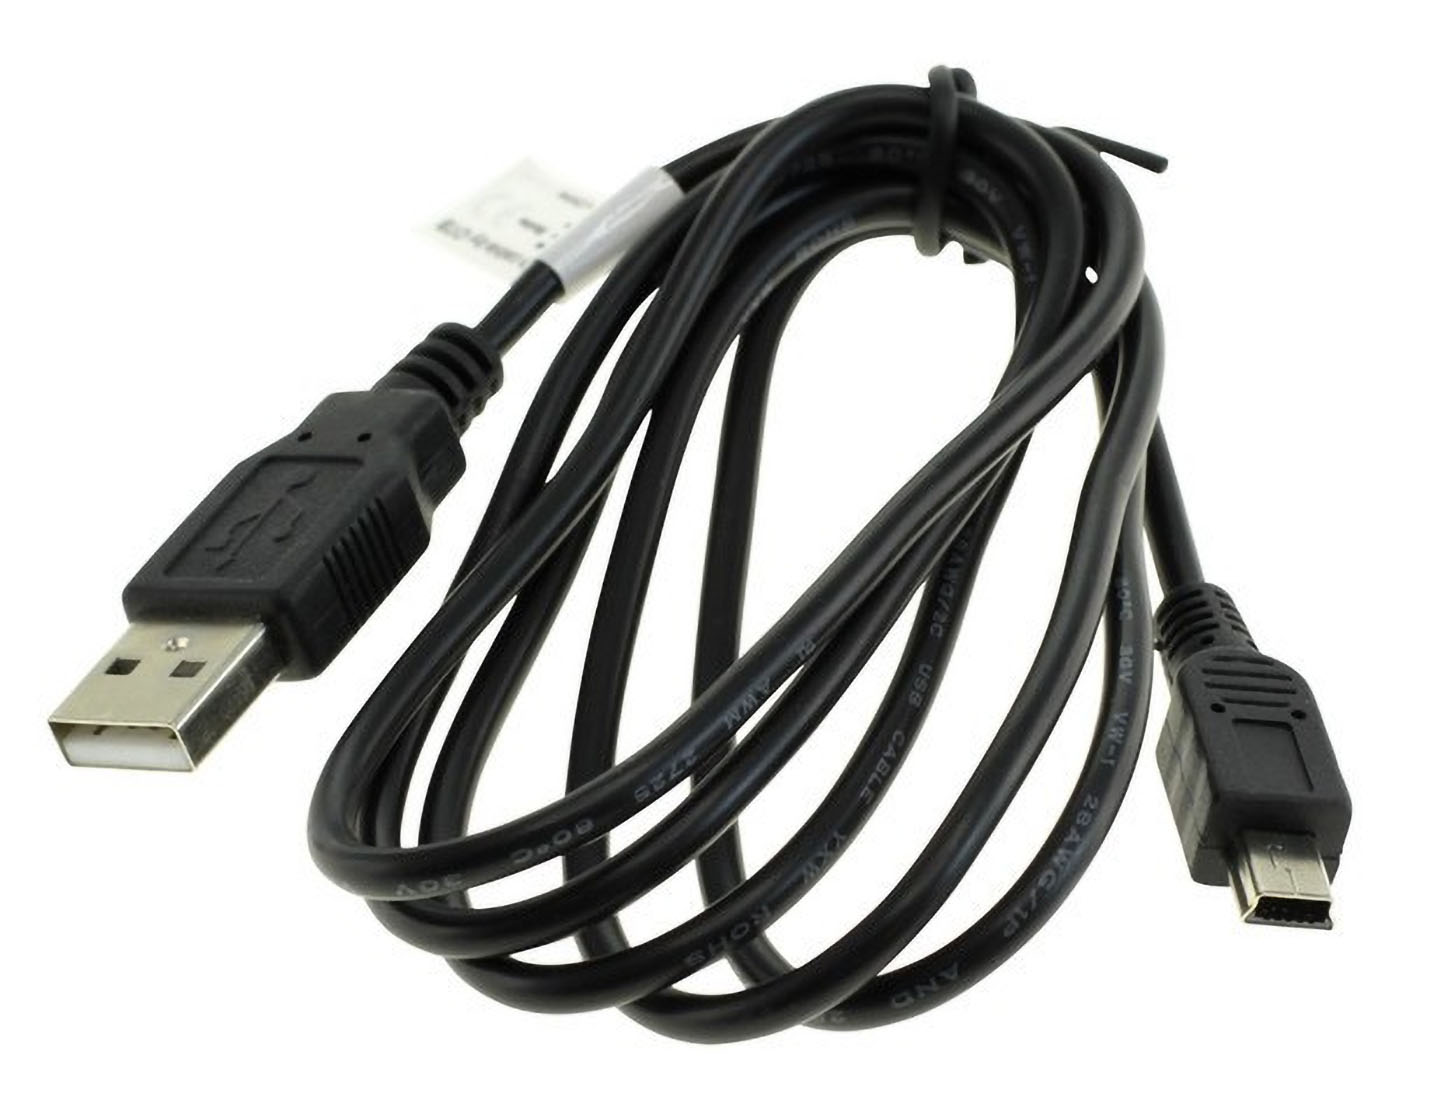 MOBILOTEC USB-Datenkabel kompatibel mit Medion Medion, E44050 Life Kabel sonstige schwarz